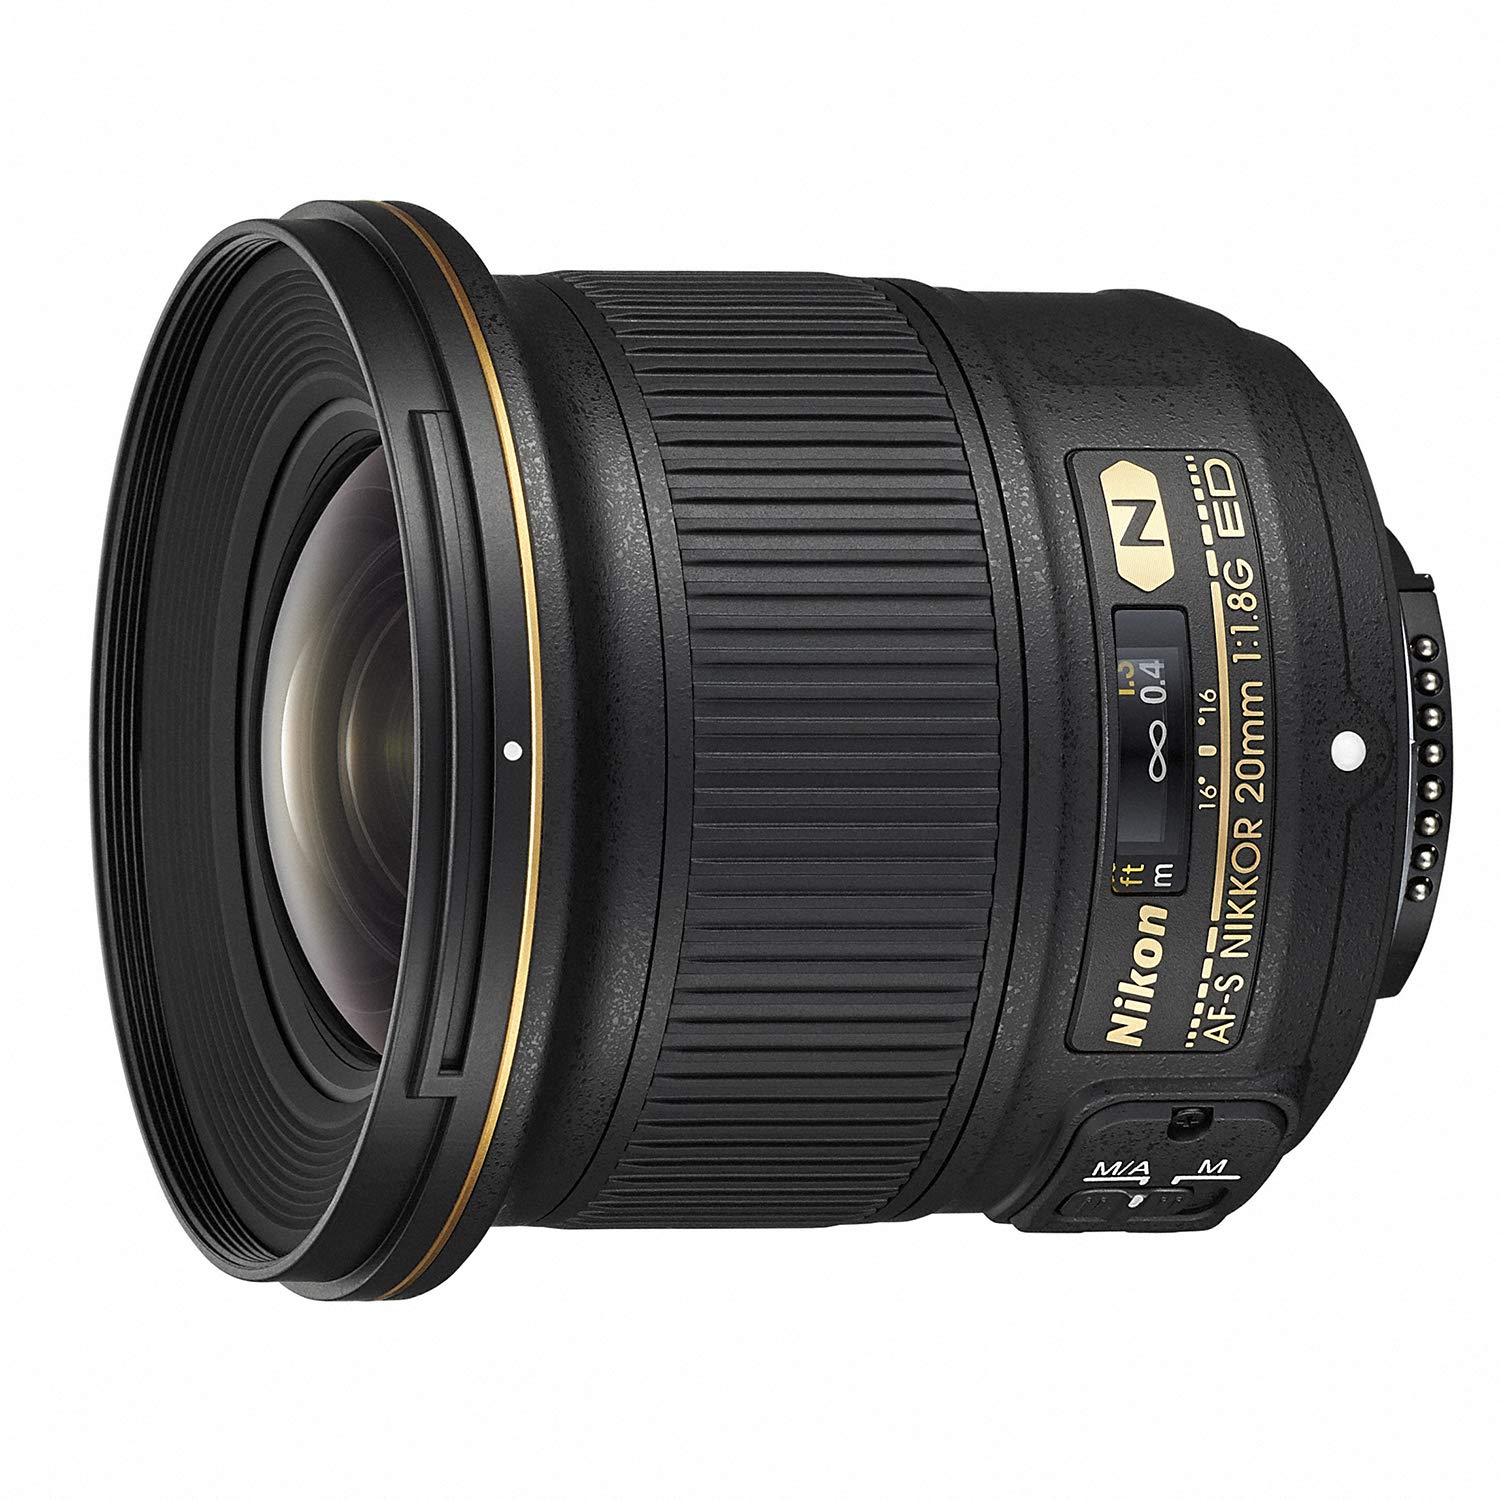 Nikon Single Focus Lens af-s NIKKOR 20 mm f/1.8G ED AFS20 1.8 G(Japan Import-No Warranty)